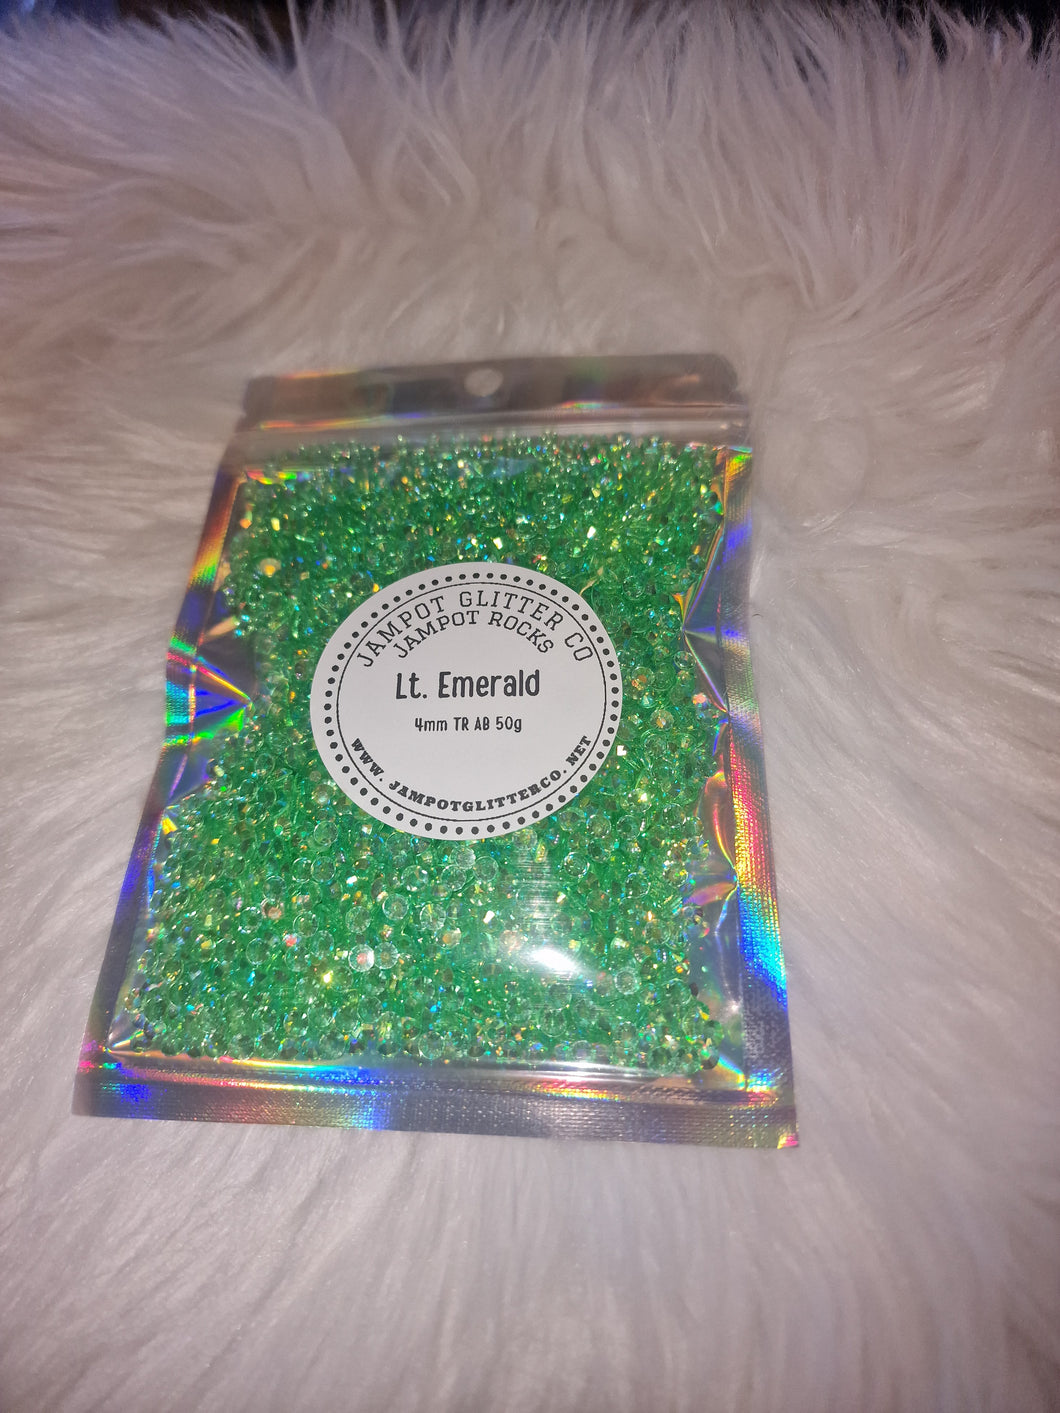 Lt. Emerald 50g bag